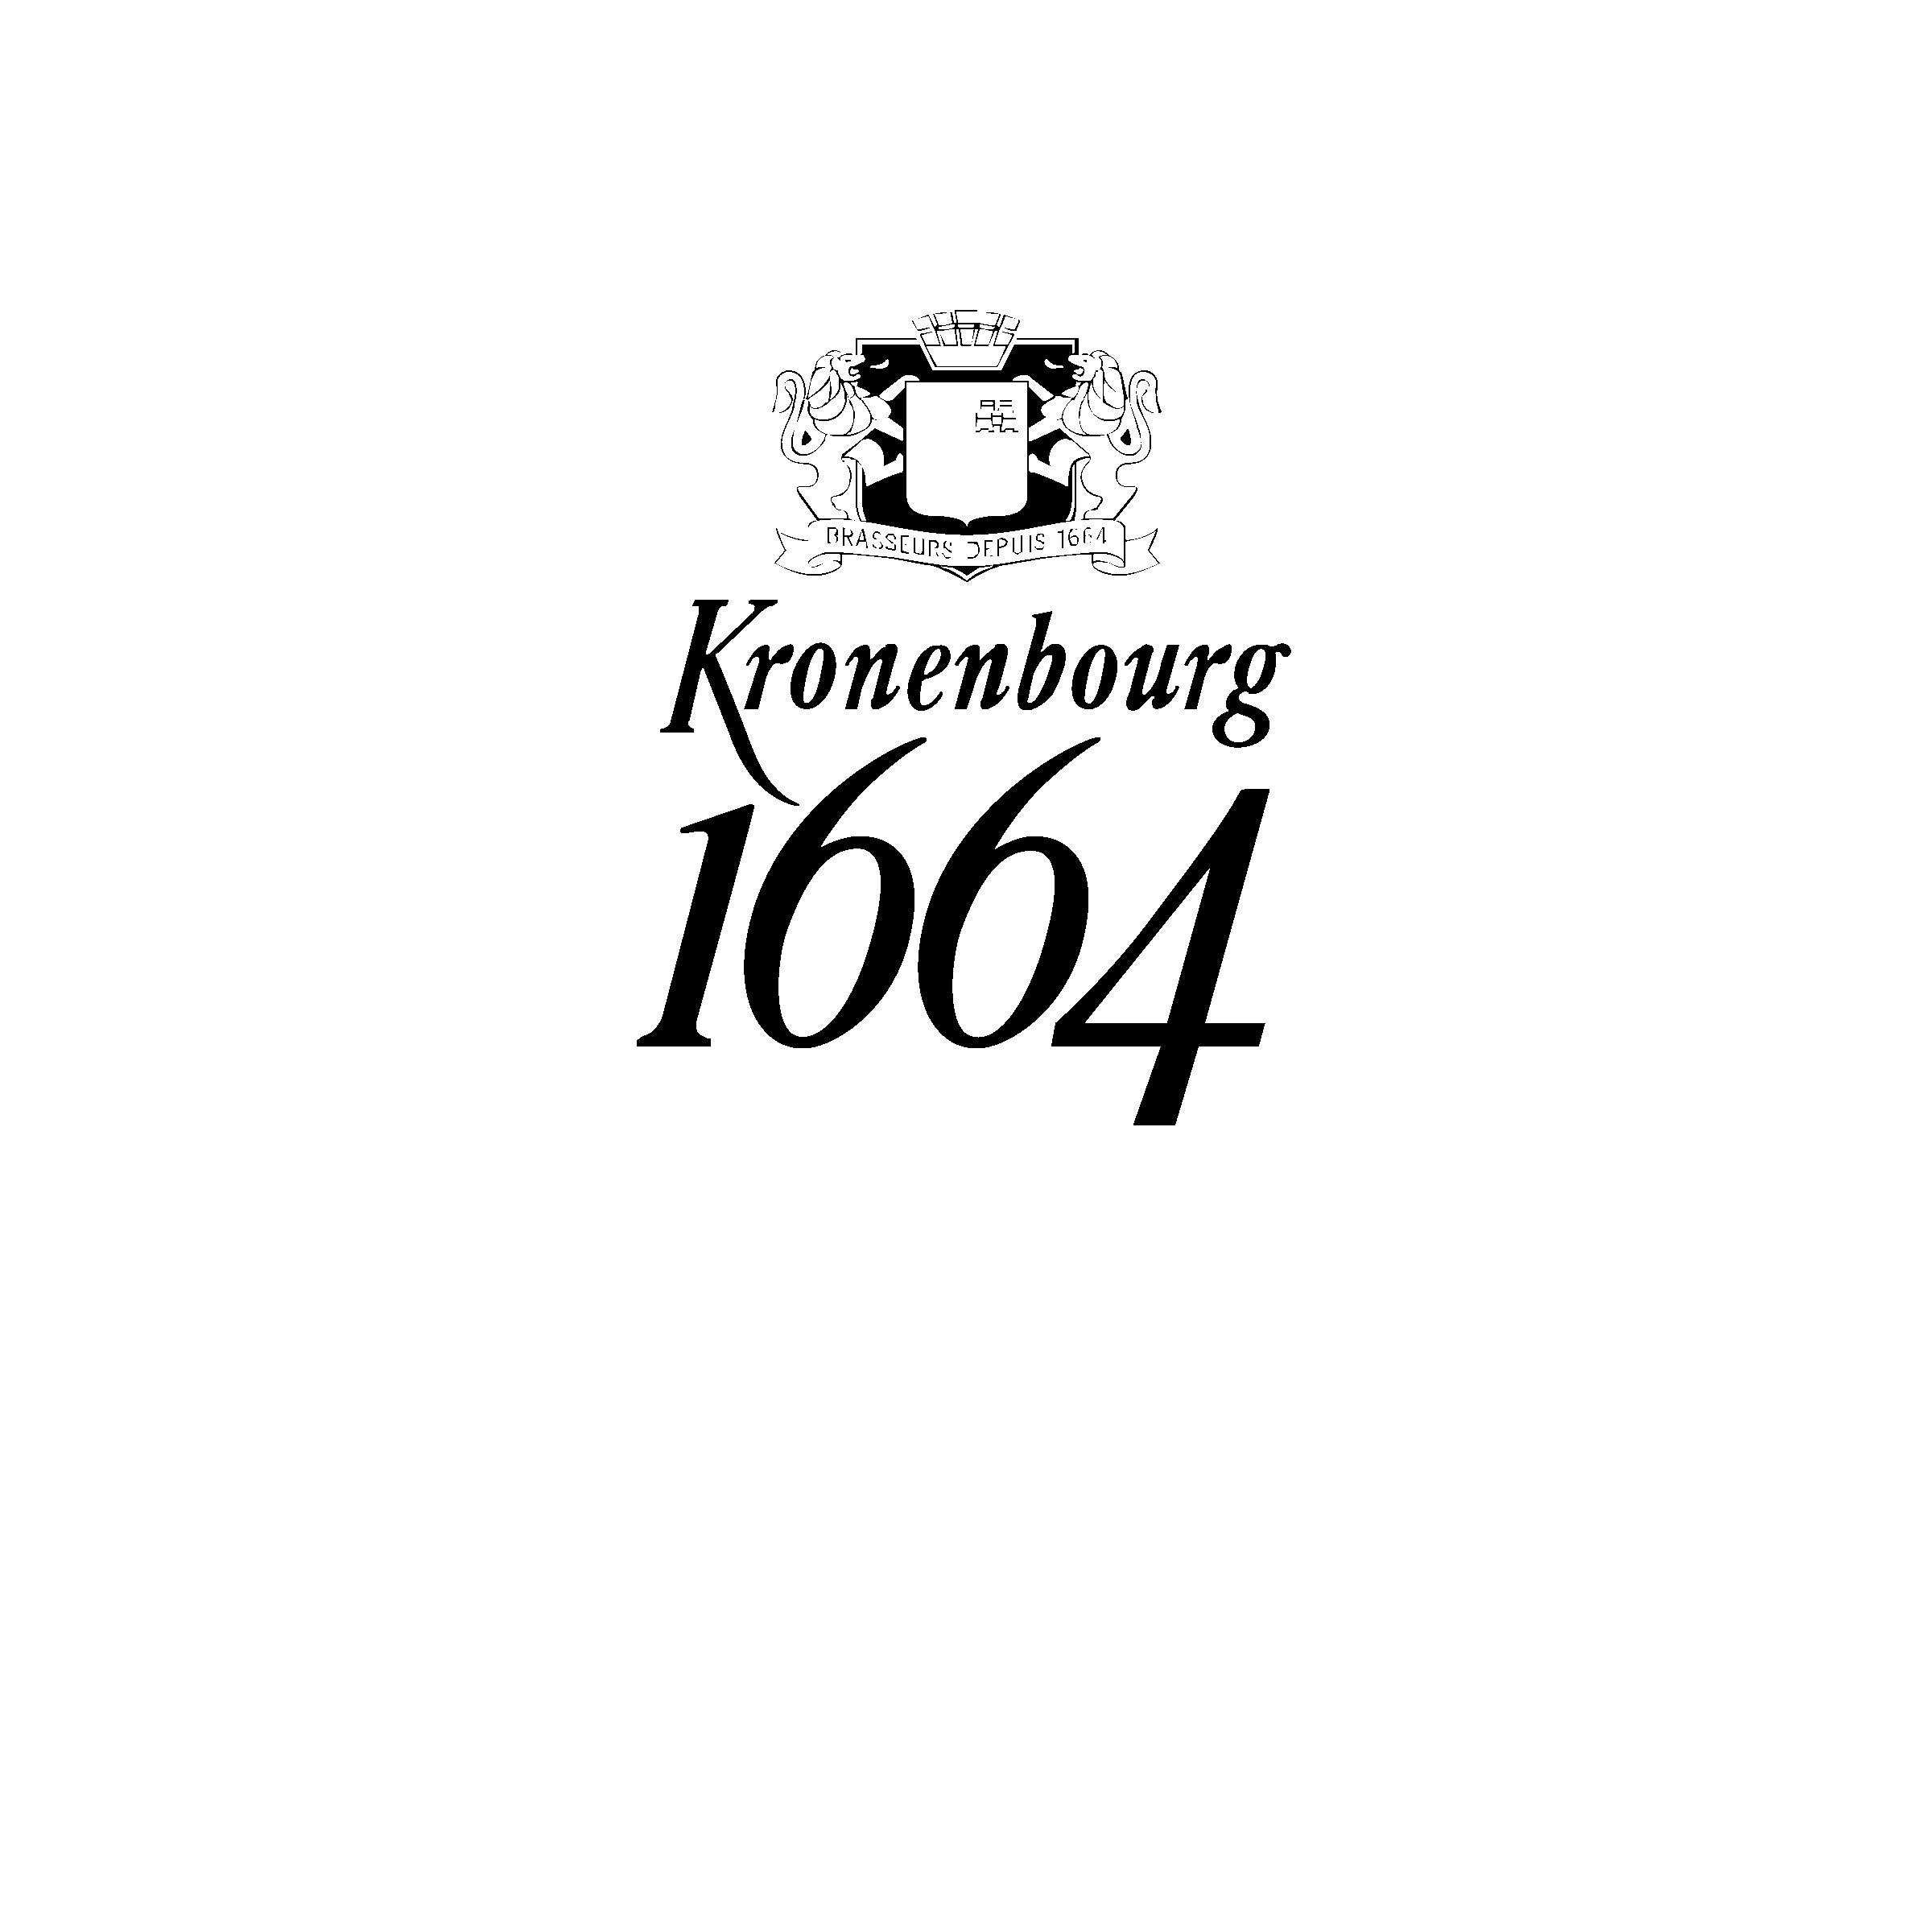 Kronenbourg Logo - Kronenbourg 1664 Logo PNG Transparent & SVG Vector